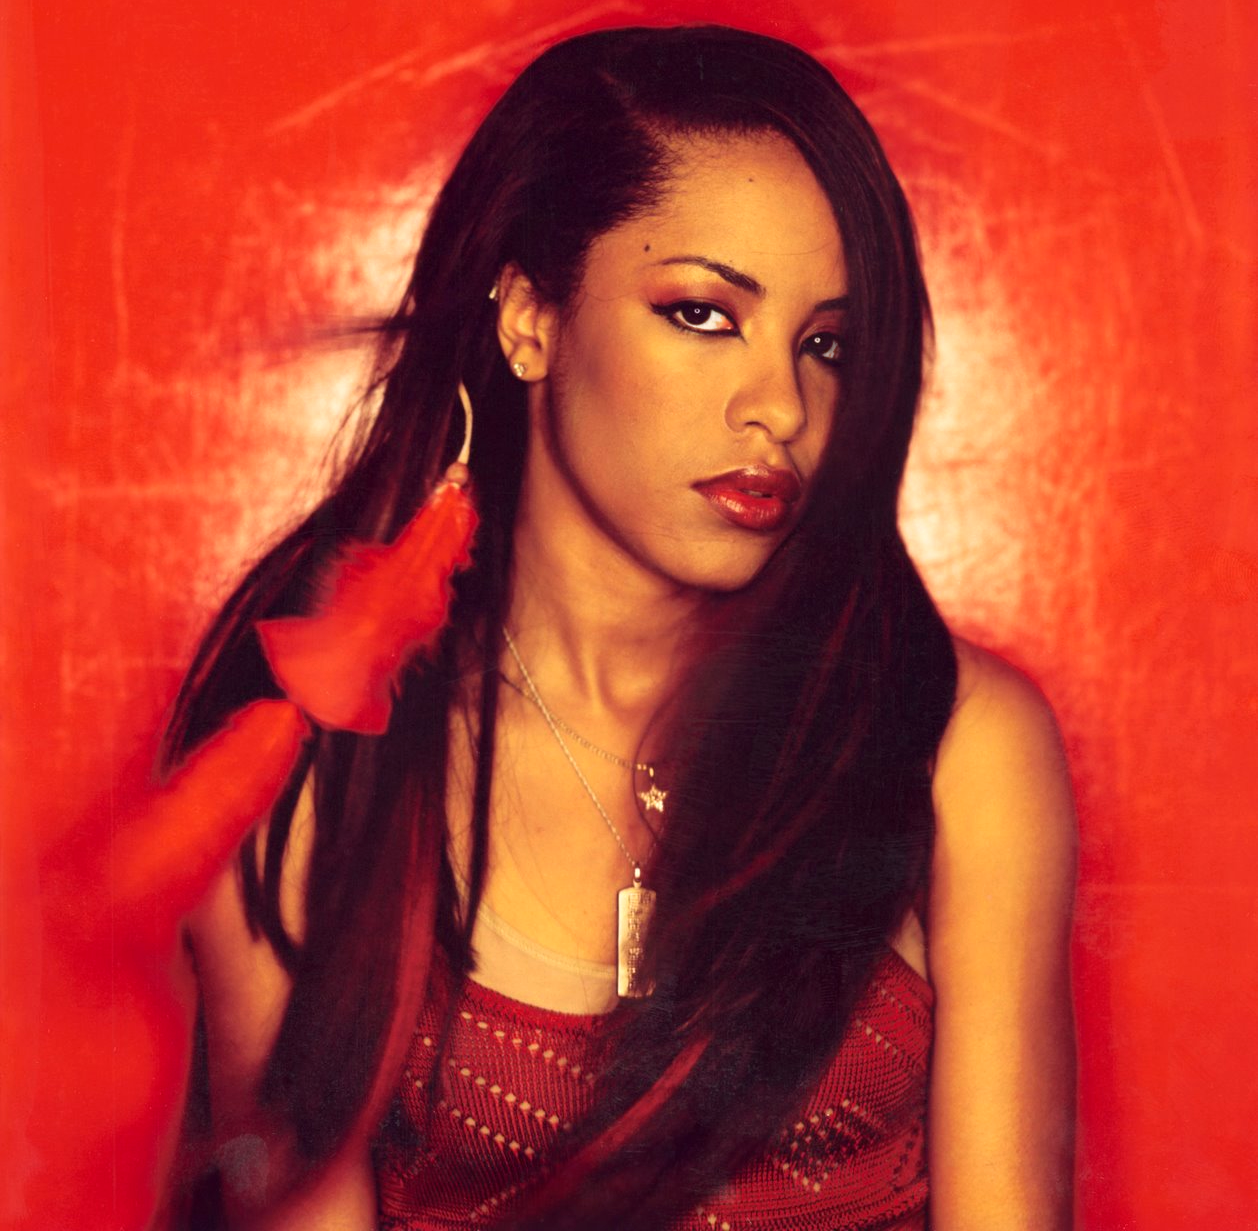 Aaliyah HD wallpapers, Desktop wallpaper - most viewed